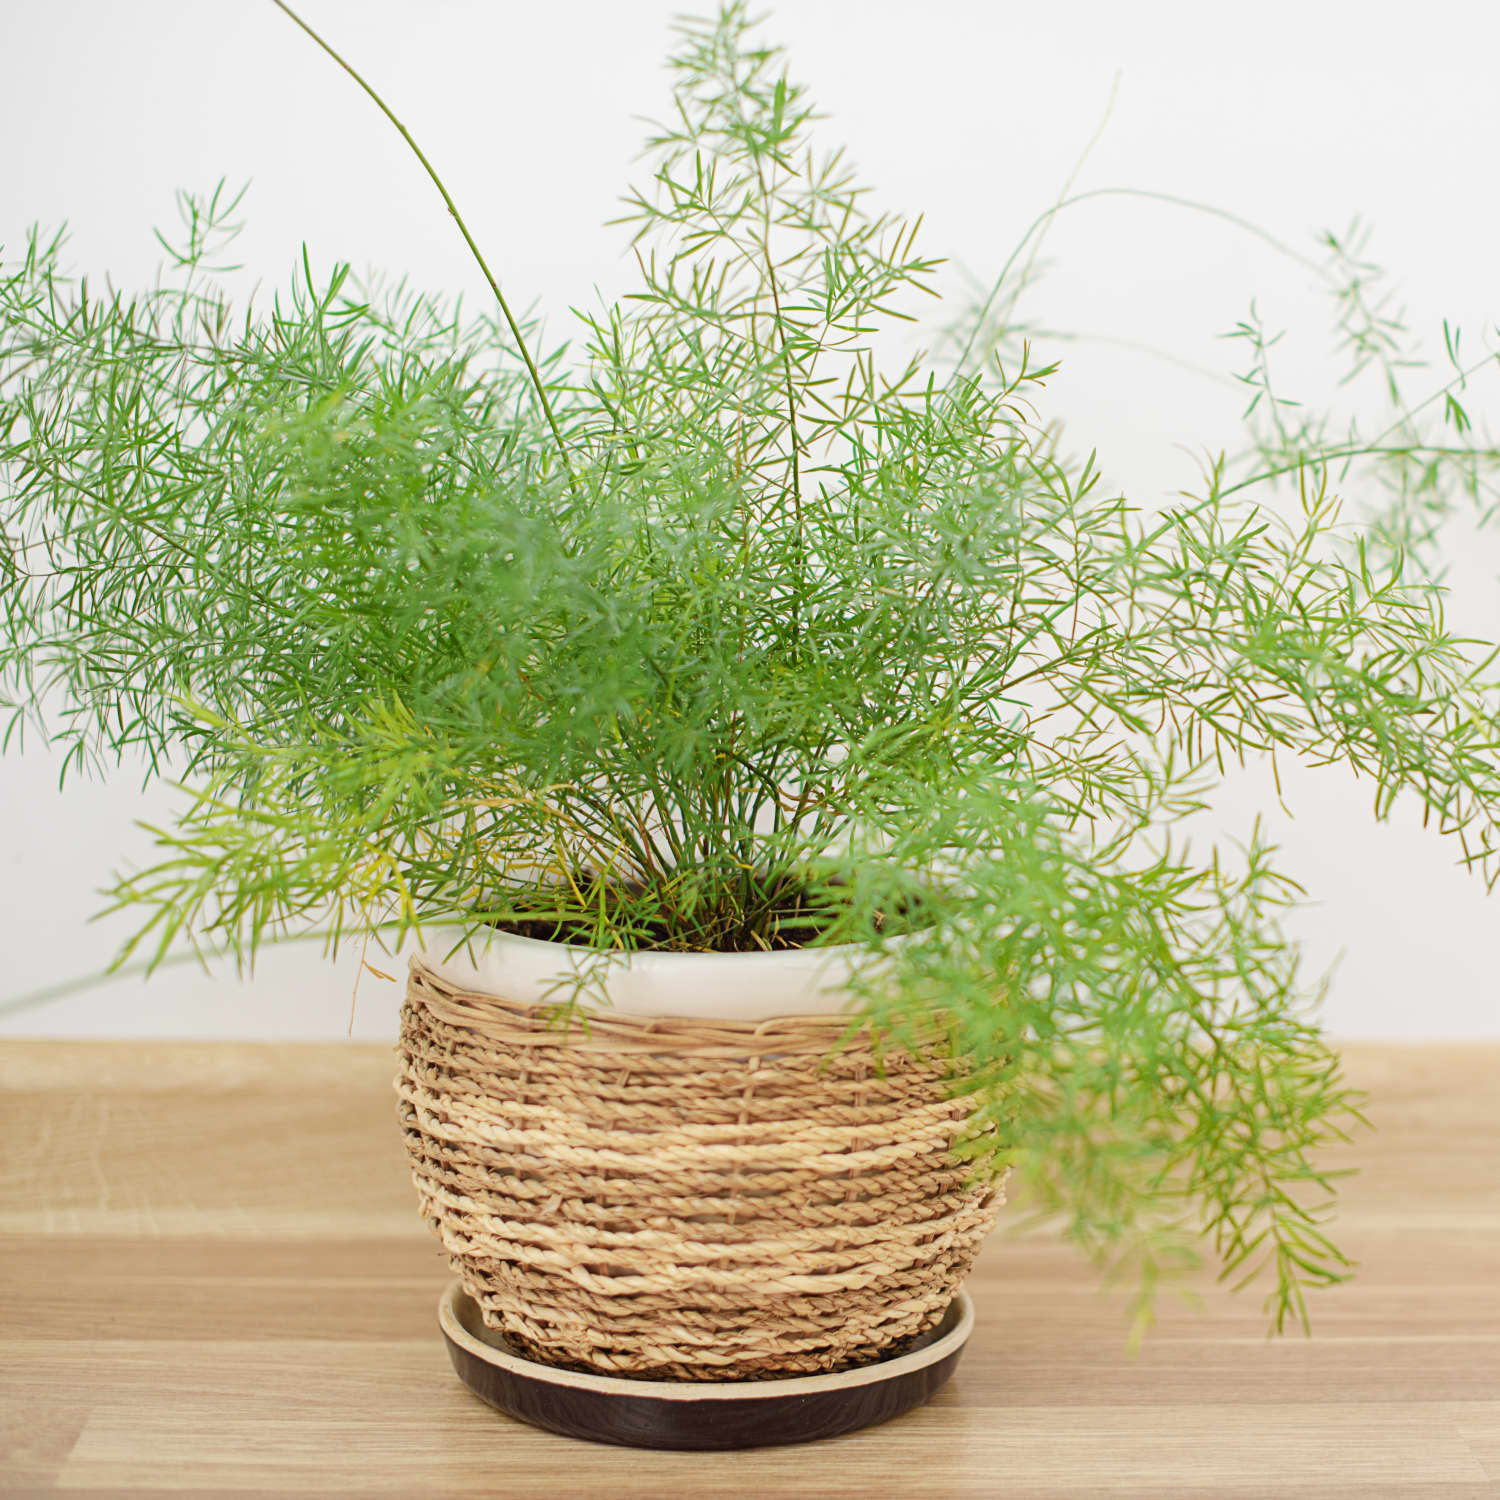 asparagus fern care - how to grow & maintain foxtail fern